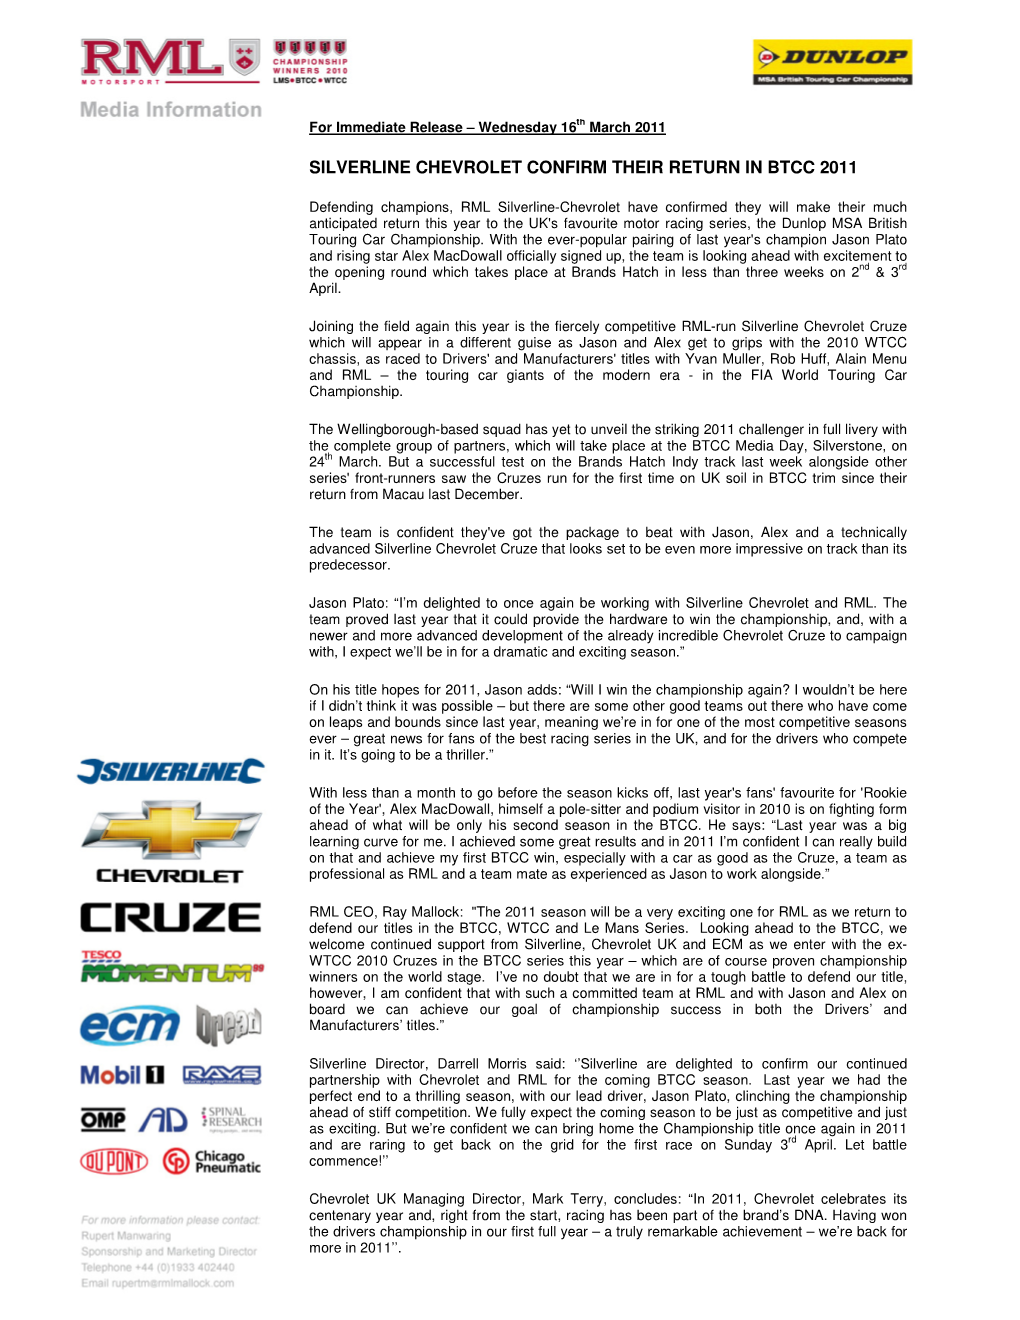 Silverline Chevrolet Confirm Their Return in Btcc 2011